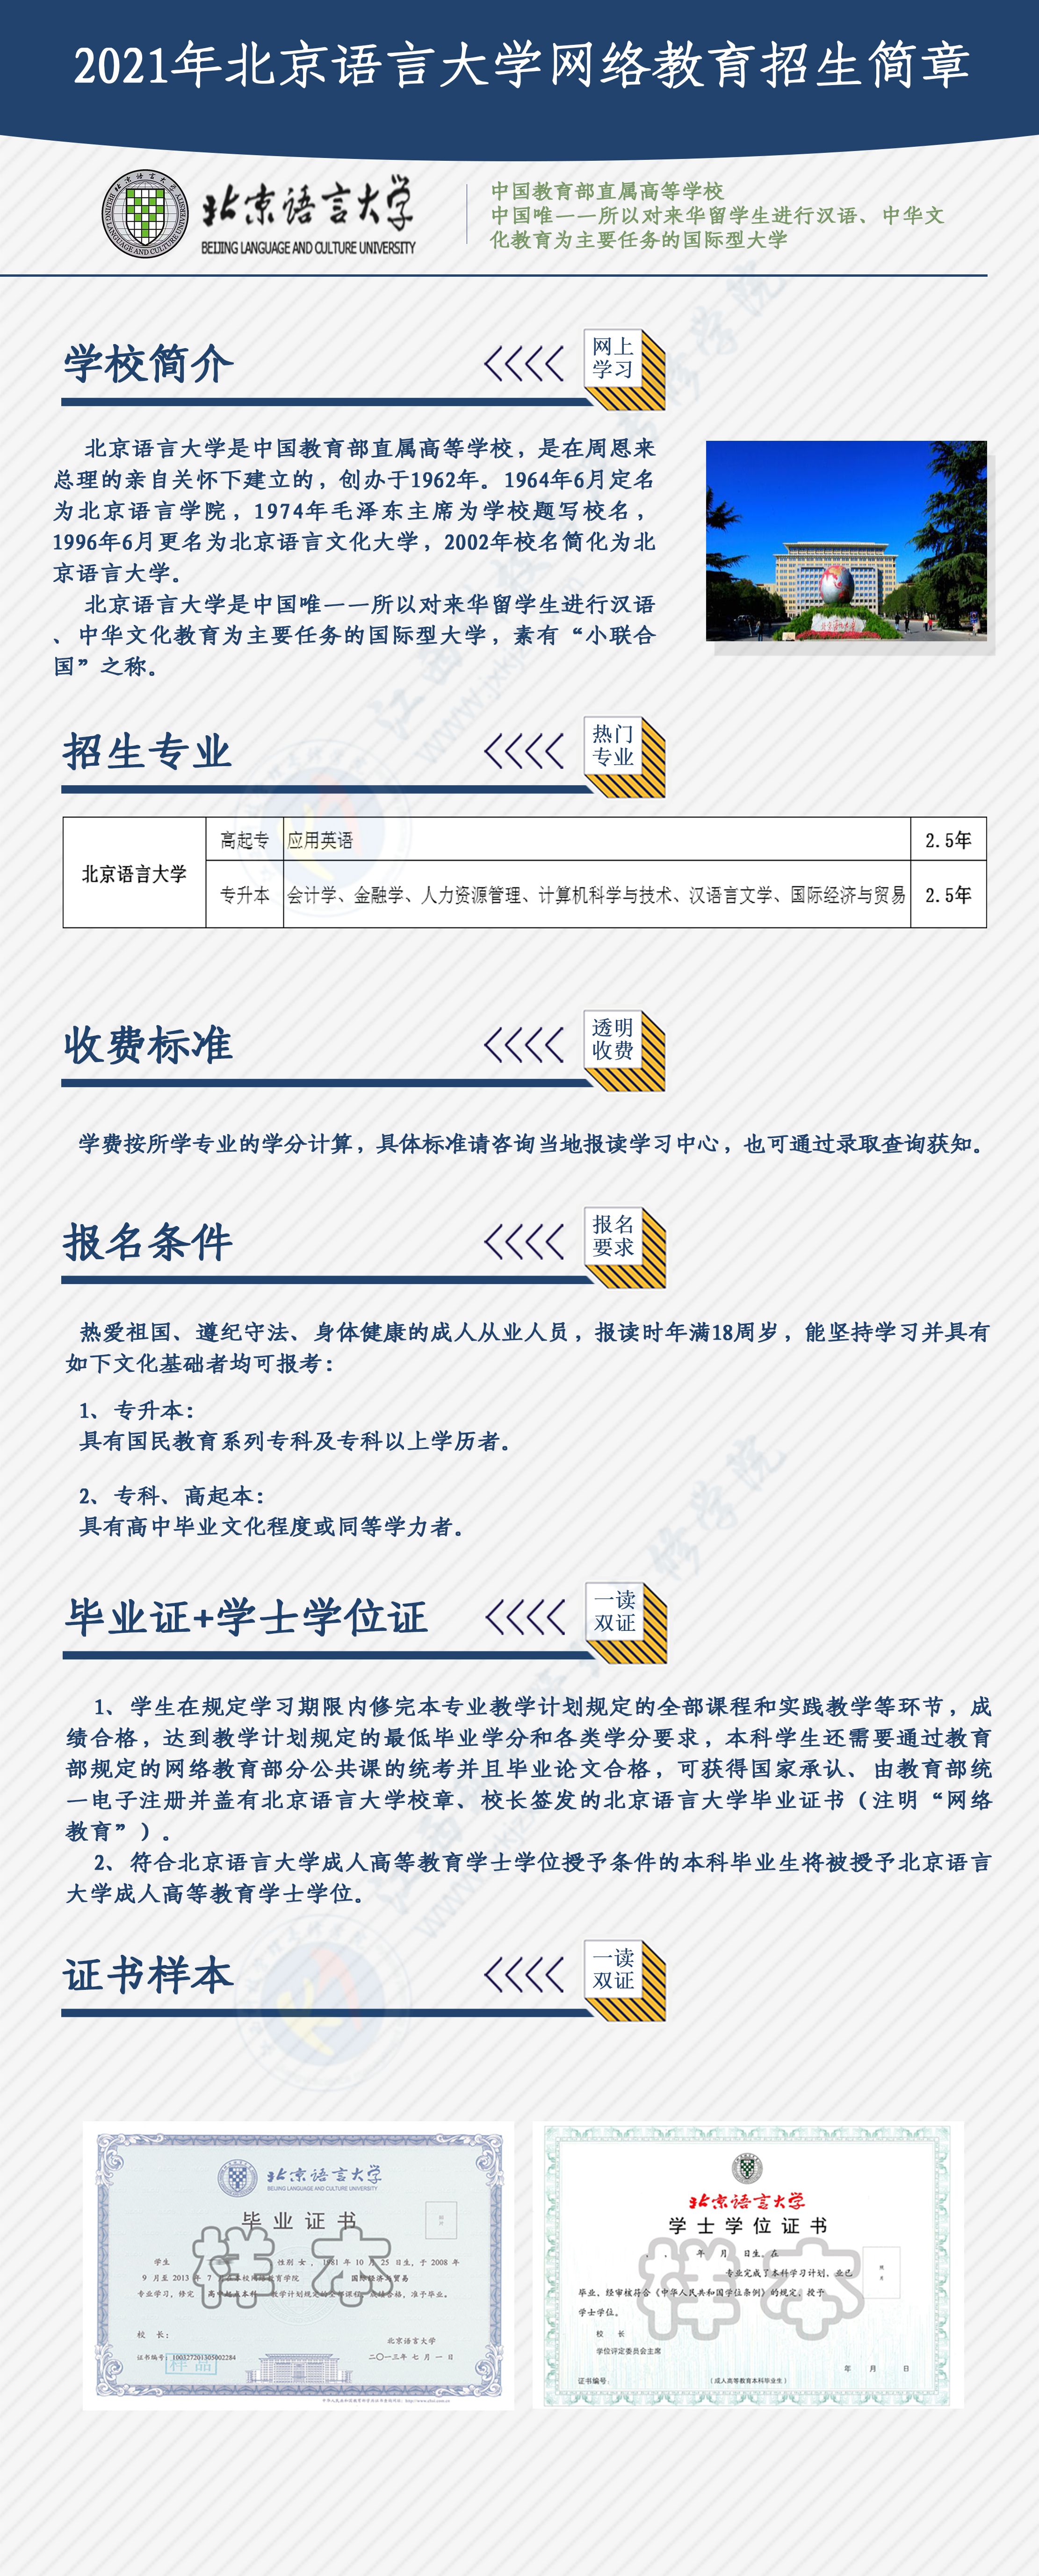 北京语言大学2021年秋季网络教育招生简章